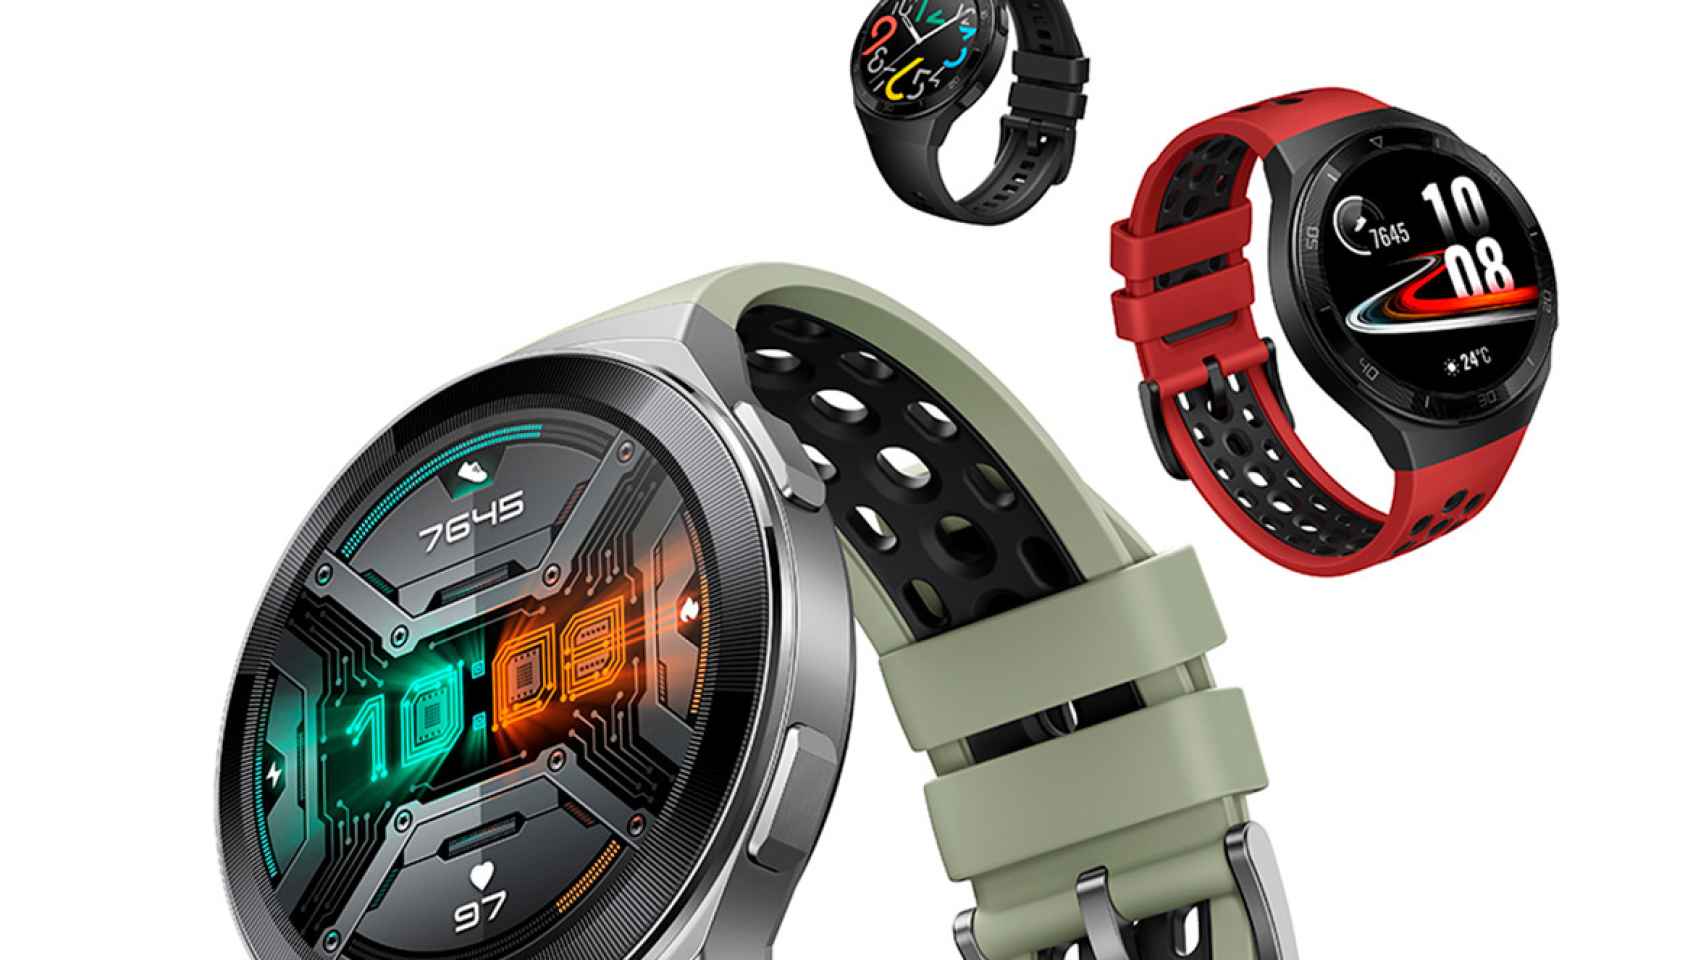 El Huawei Watch GT 2e está en oferta a 99 euros en Amazon España